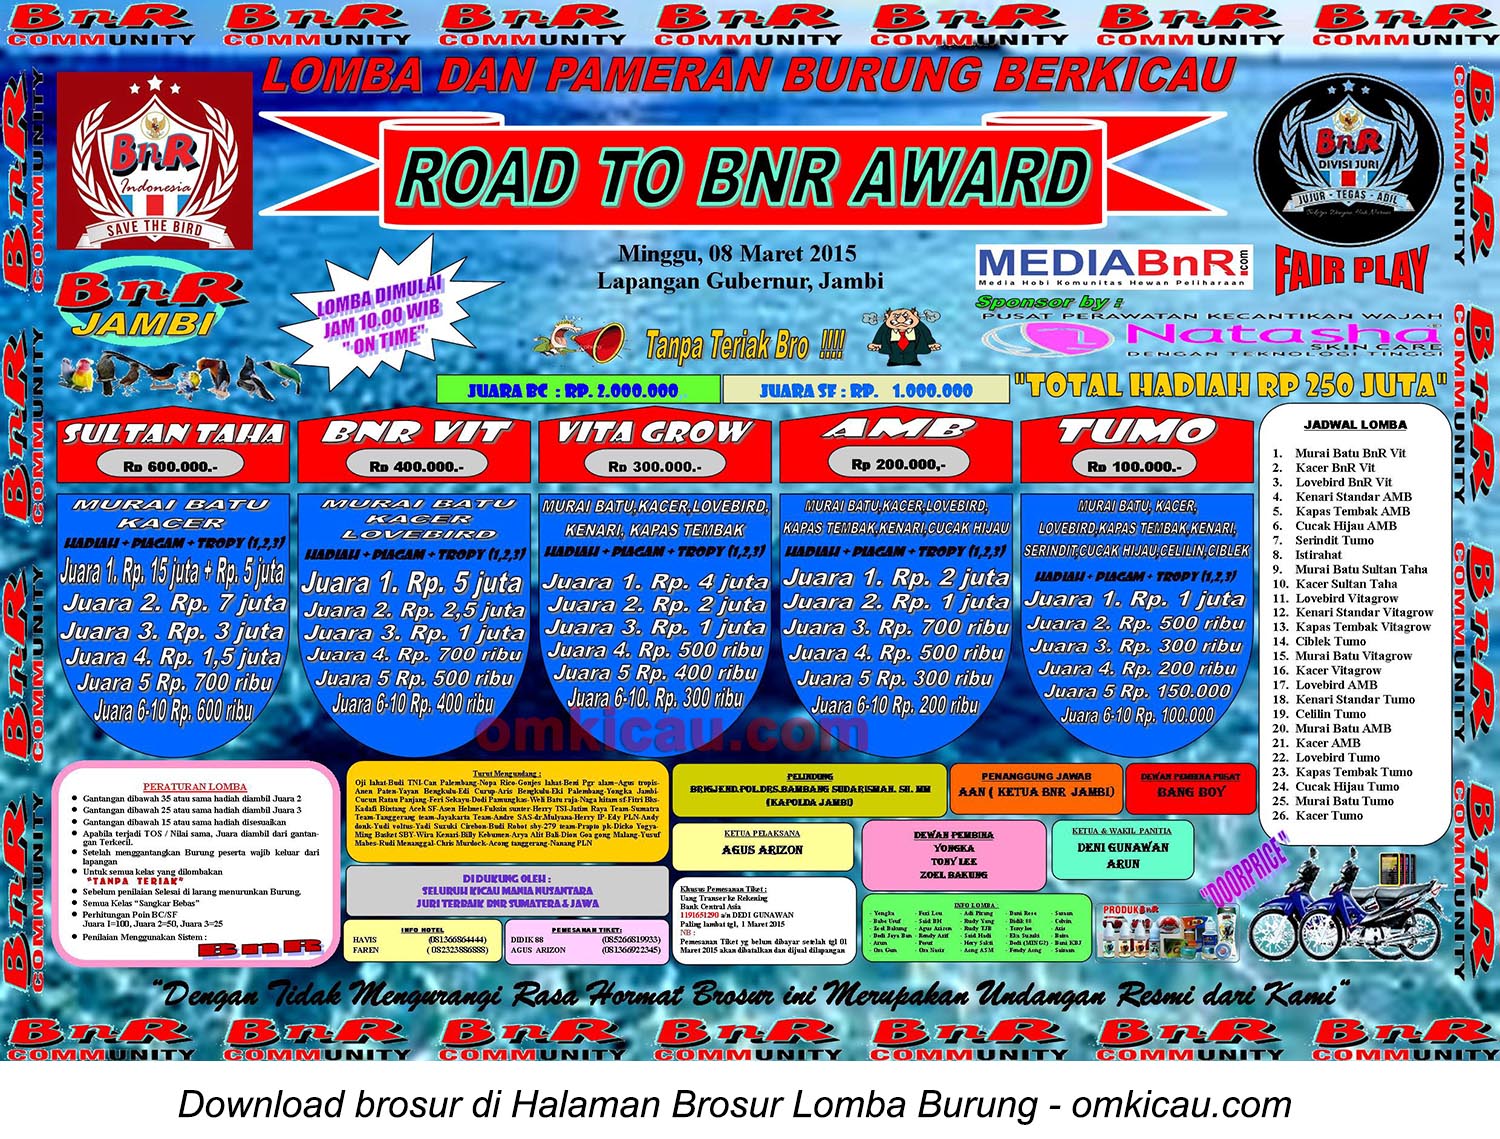 Brosur Lomba Burung Road to BnR Award, Jambi, 8 Maret 2015